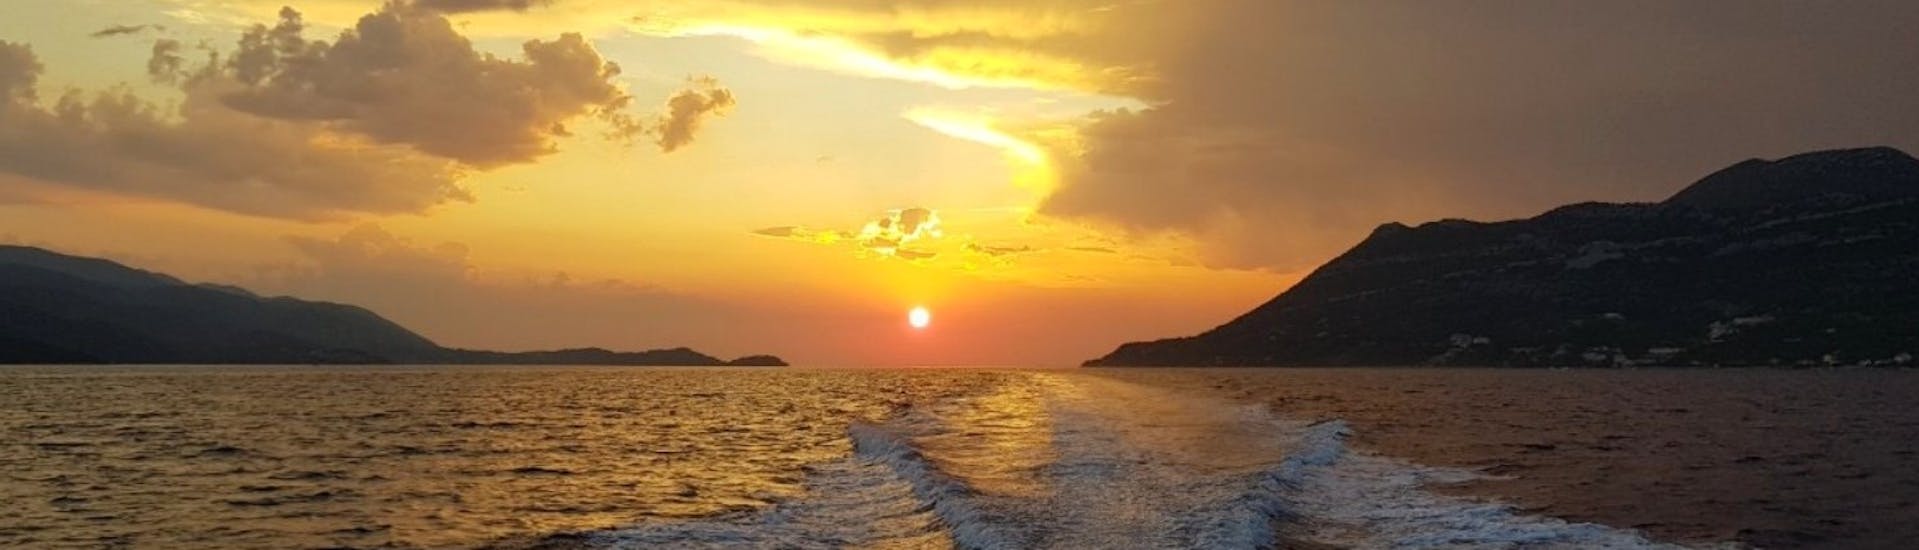 Sonnenuntergang während der privaten Sonnenuntergangs-Kreuzfahrt von Dubrovnik zur Insel Daska, veranstaltet von Snooky Tours Dubrovnik.